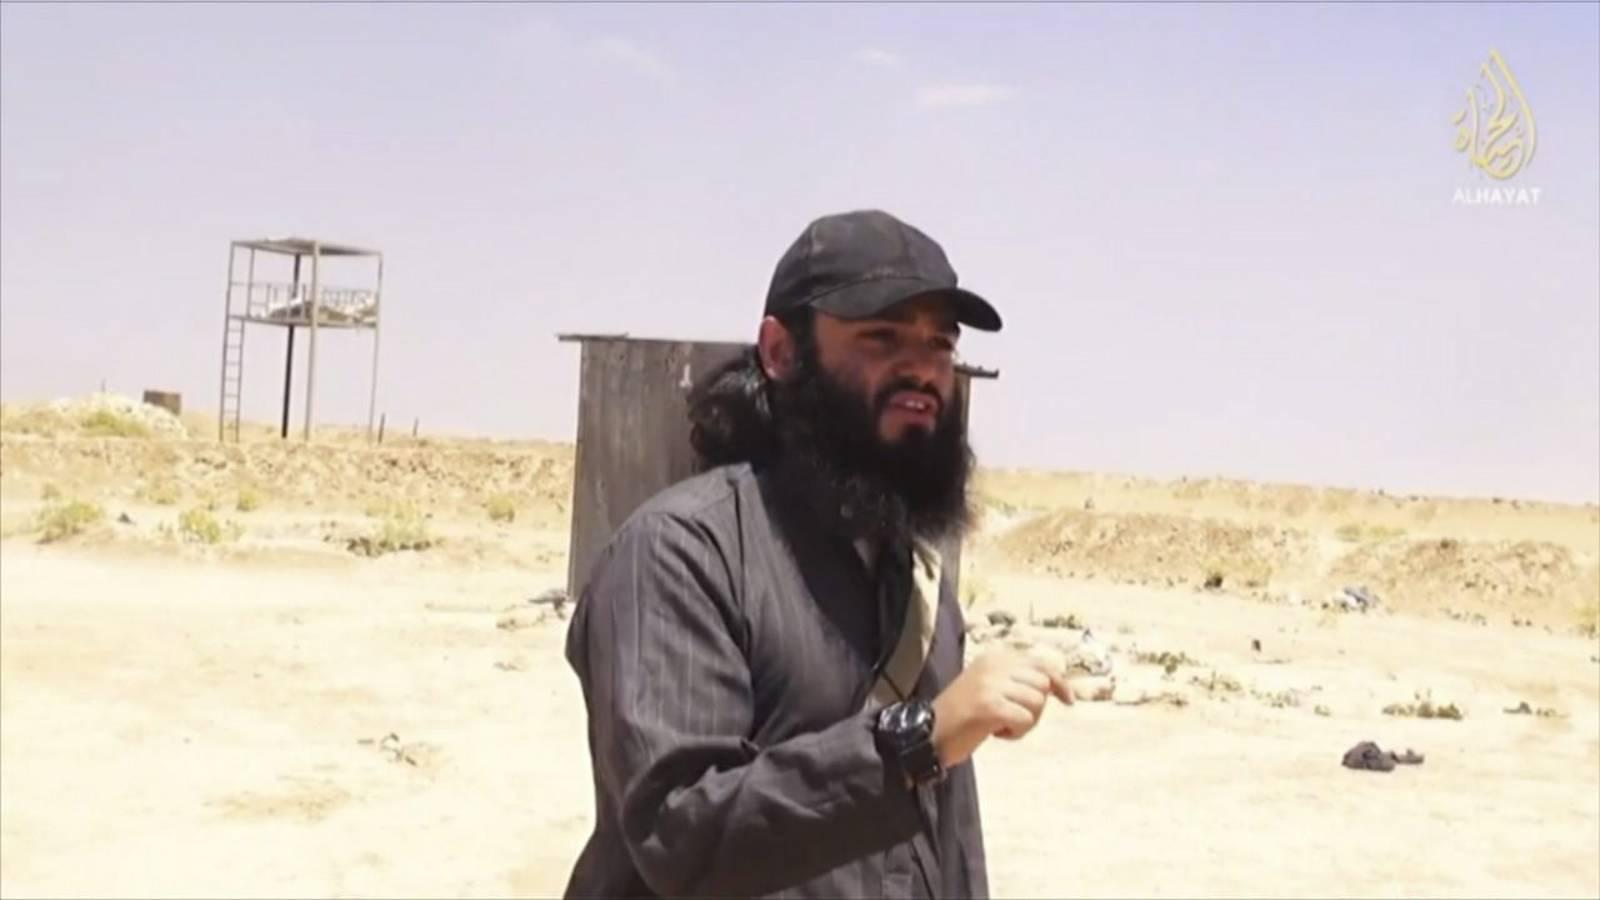 I forrige uke publiserte islamistgruppen ISIL en propagandavideo der skiensmannen Bastian Vasquez, alias Abu Safiyyah, forteller om hvordan han og andre opprørere har drept irakske soldater i kampen om en grensestasjon mellom Syria og Irak. PST har startet etterforskning av Vasquez. 